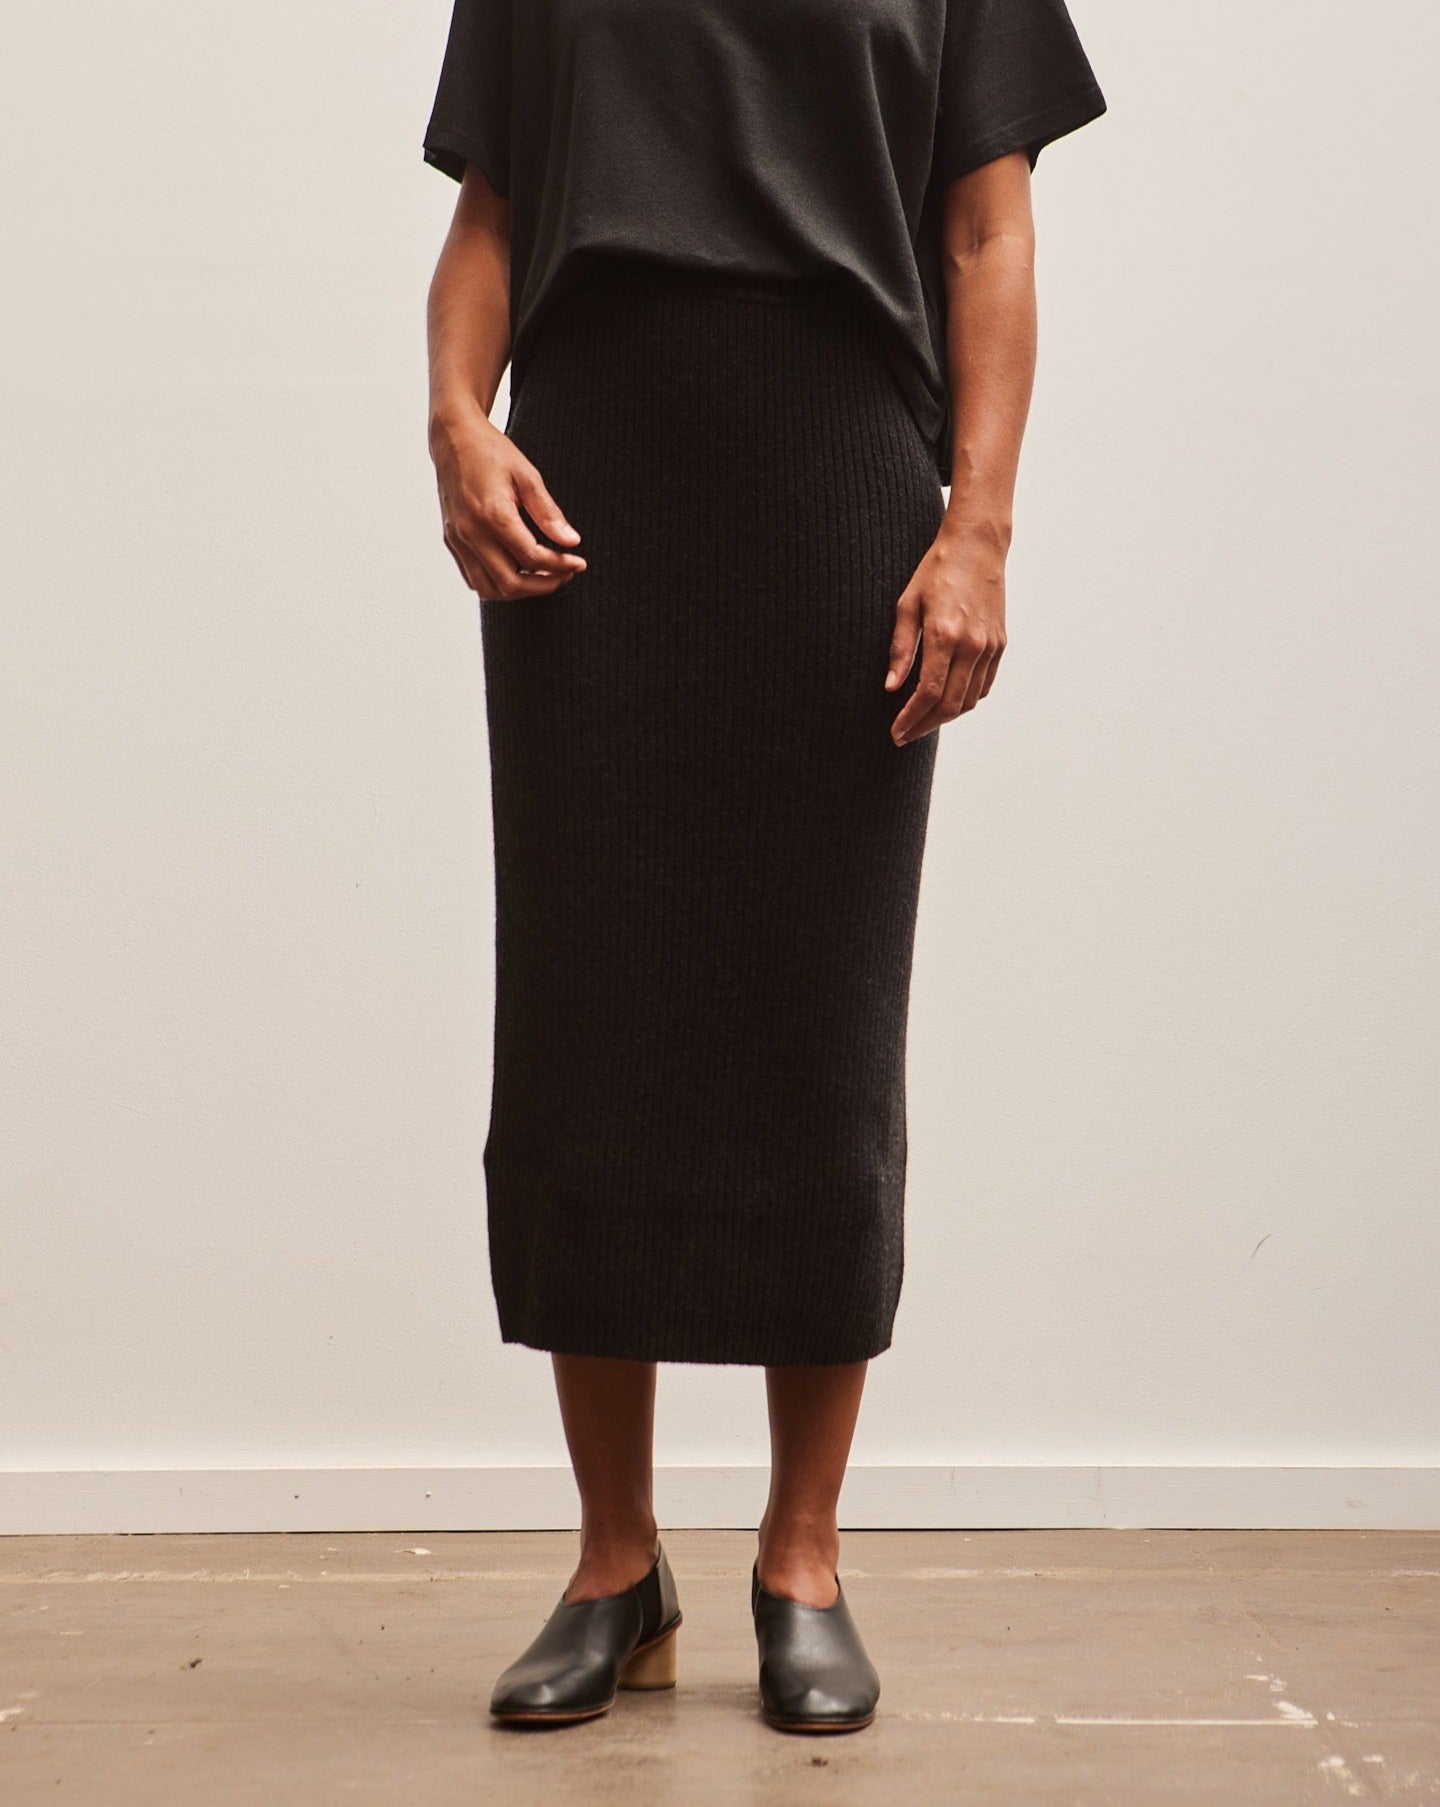 Lauren Manoogian Rib Tube Skirt, Black Melange